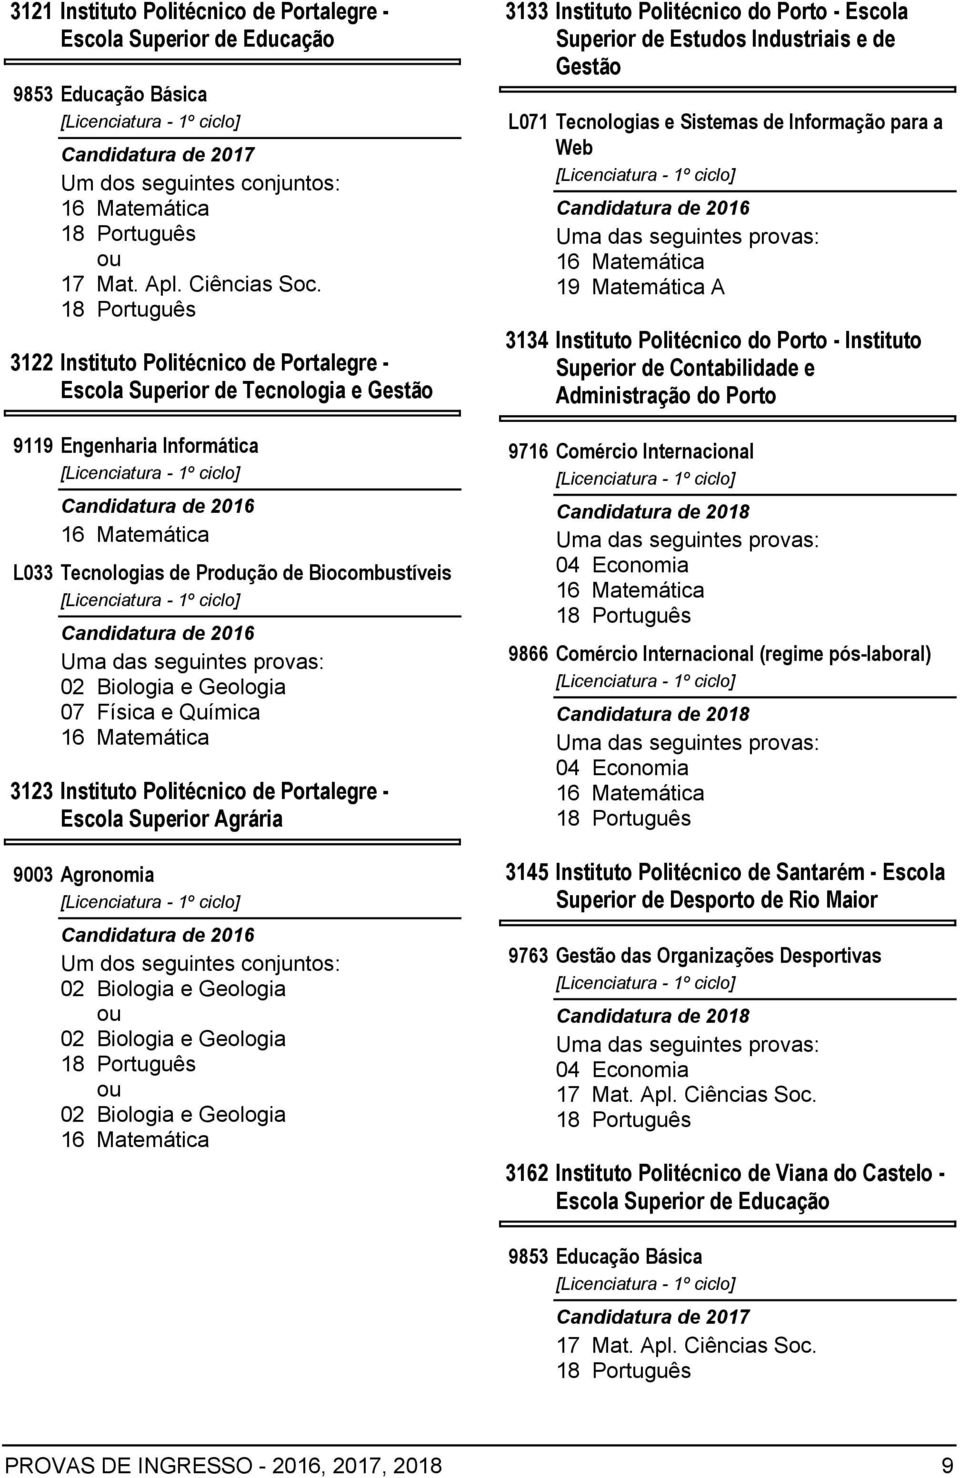 Estudos Industriais e de Gestão L071 Tecnologias e Sistemas de Informação para a Web 3134 Instituto Politécnico do Porto - Instituto Superior de Contabilidade e Administração do Porto 9716 Comércio